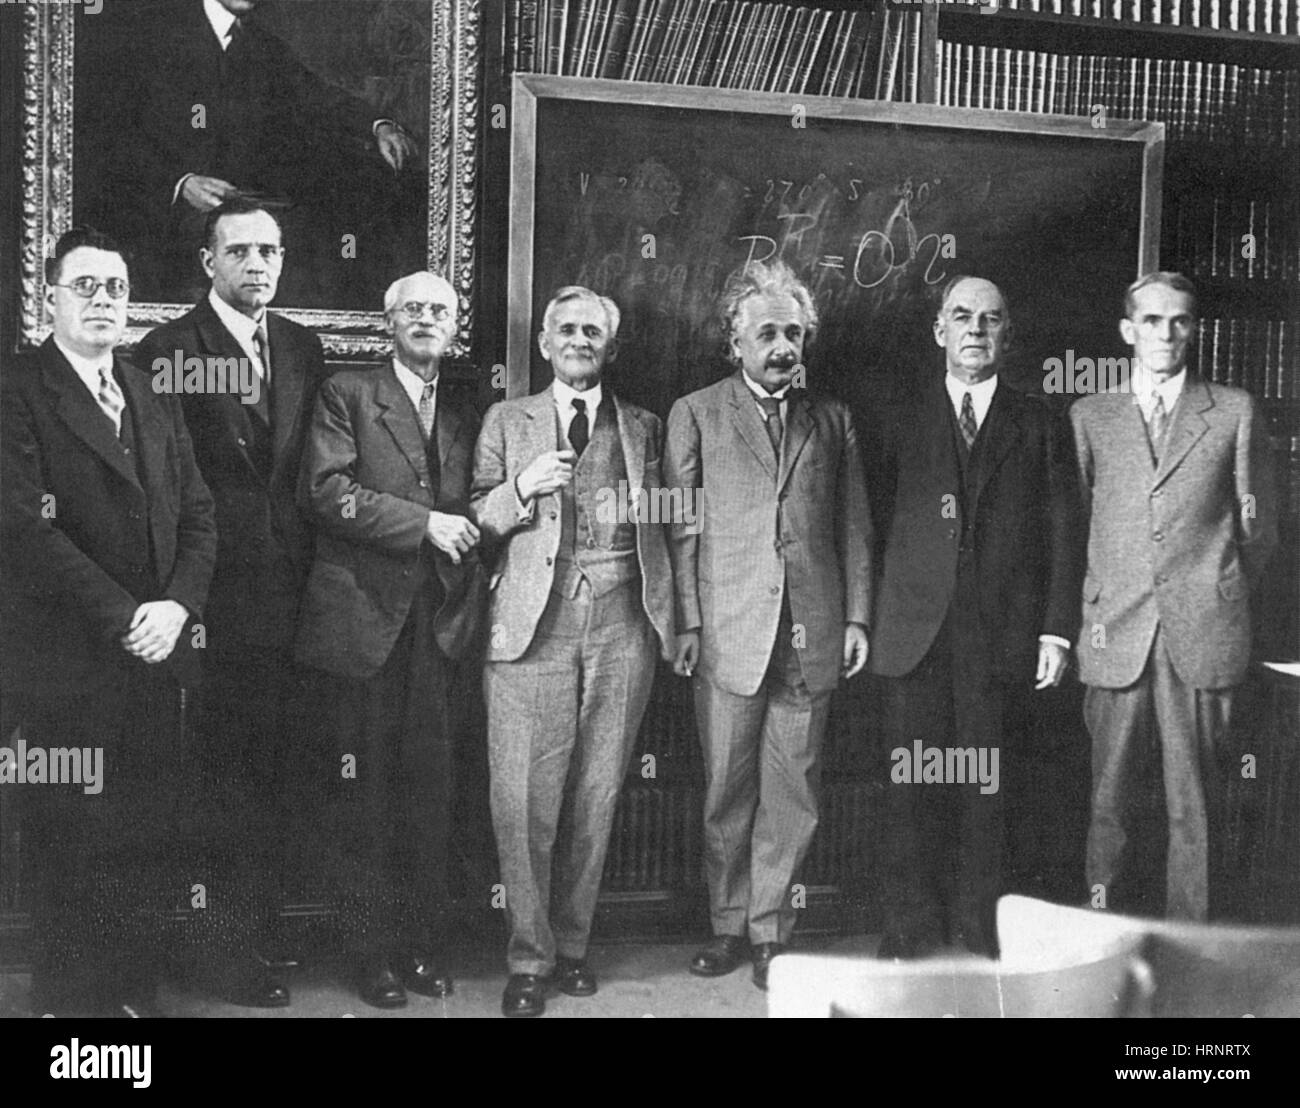 Albert Einstein, Albert Michelson and Others, 1931 Stock Photo